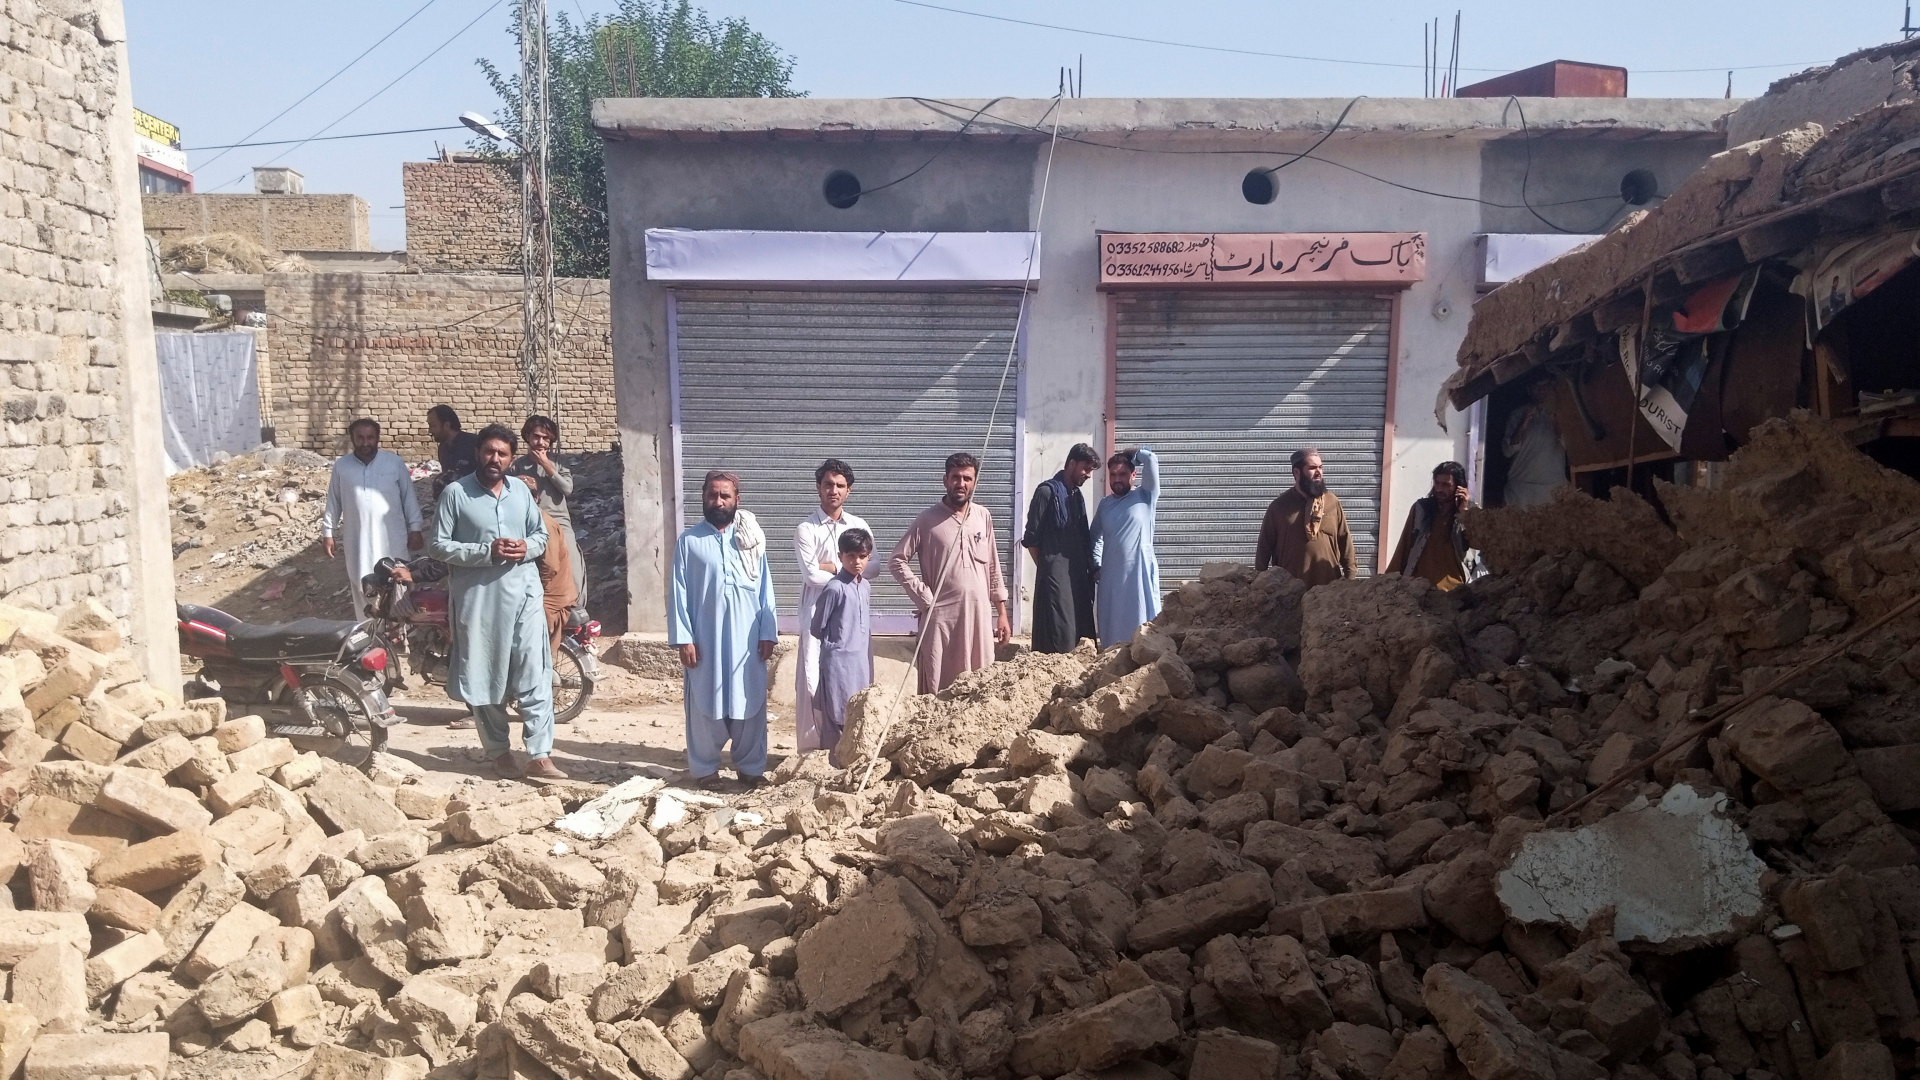 Menschen in Pakistan in Trümmern nach einem Erdbeben | REUTERS